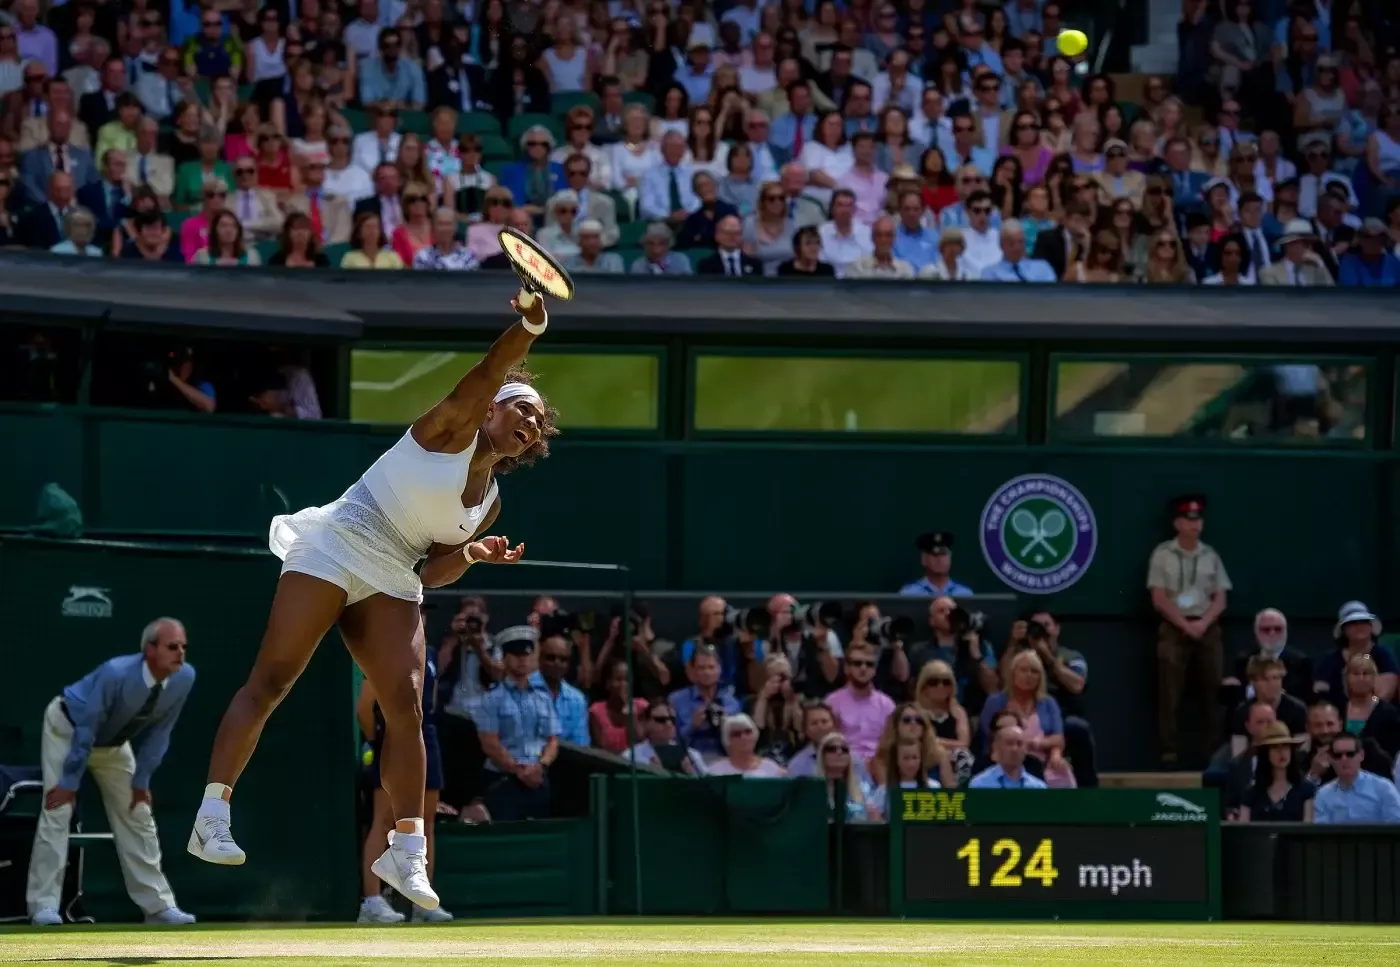 20. Juli 2015: Serenas stärkste Tenniswaffe, ihr Aufschlag, half ihr, Garbine Muguruza im Finale zu schlagen.